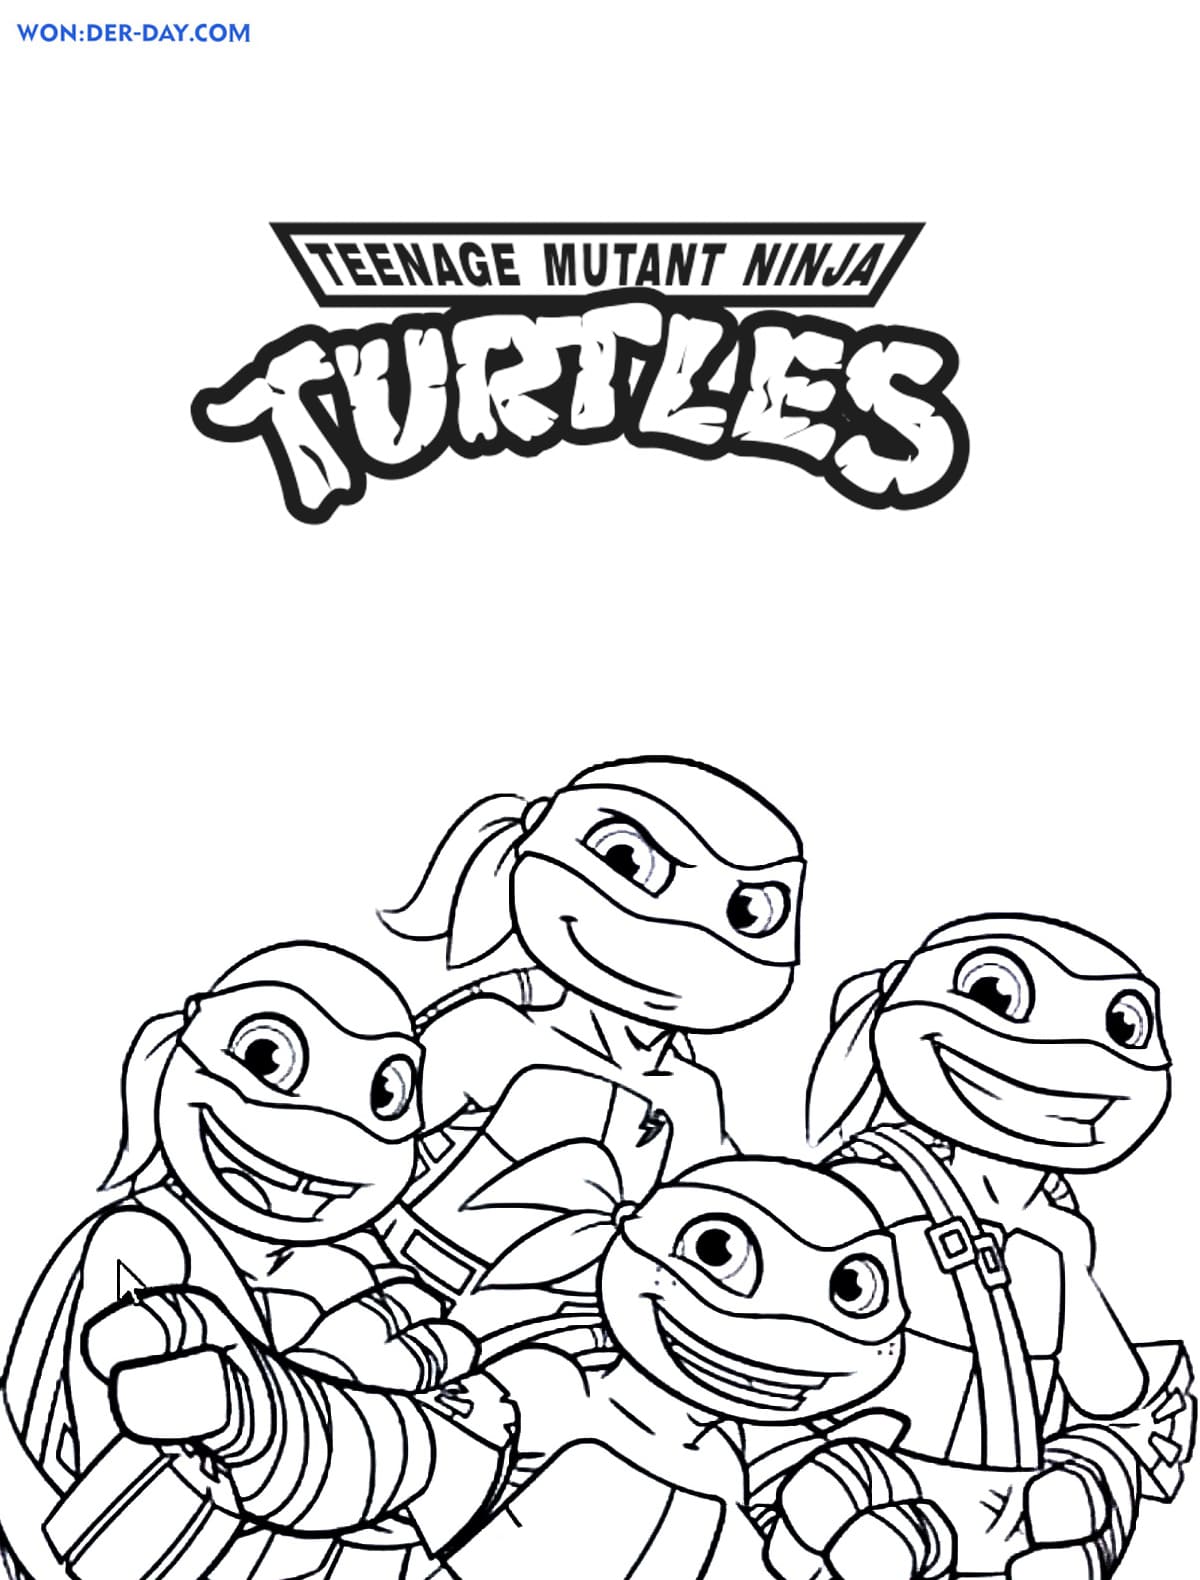 teenage-mutant-ninja-turtles-coloring-pages-wonder-day